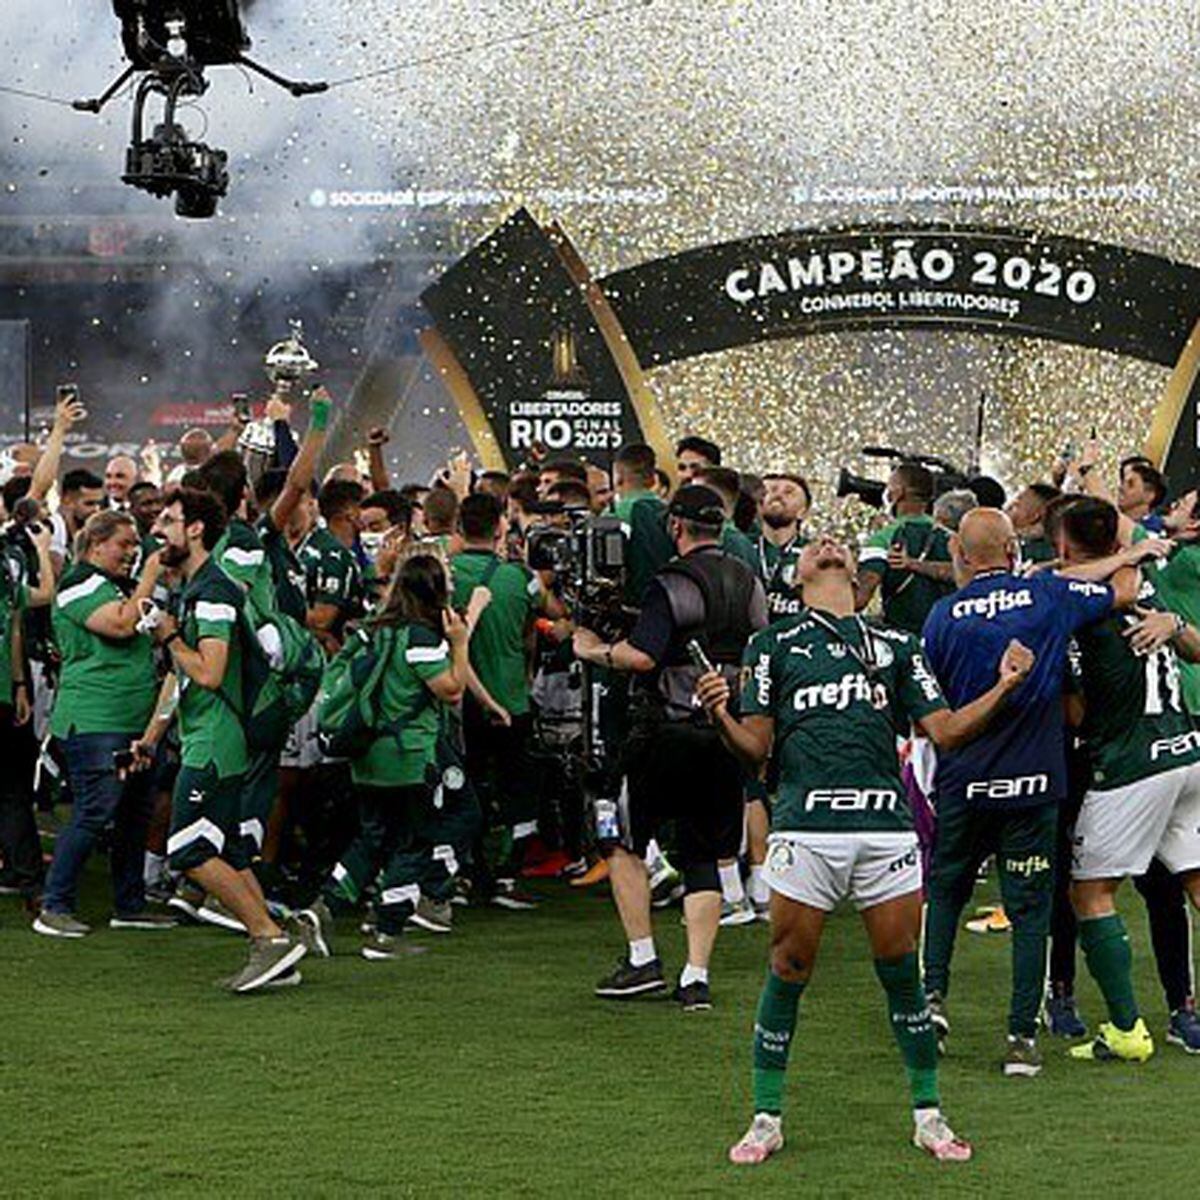 Defensa y Justicia campeão da Copa Sul Americana 2020 - Leitura de